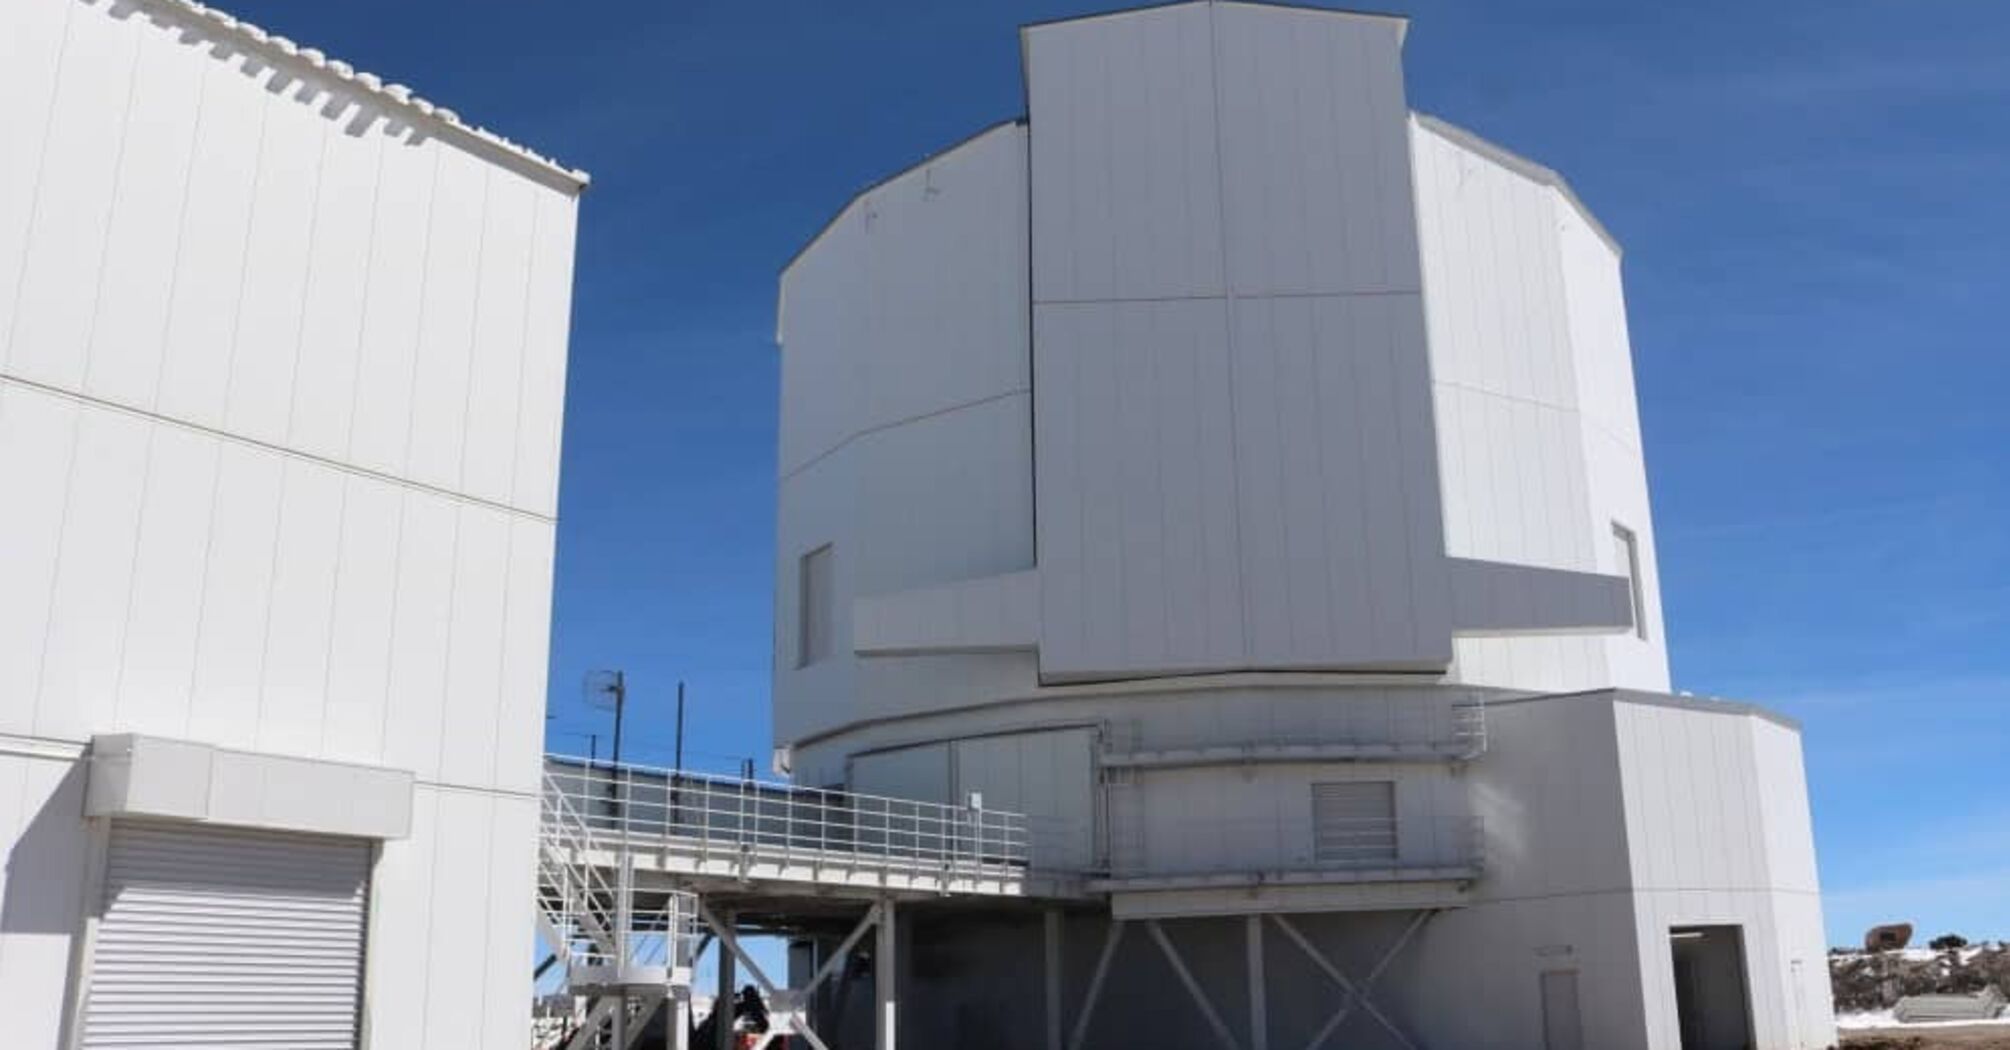 Najwyższe obserwatorium na świecie zostało oficjalnie otwarte w Chile: jak wygląda i co jest wyjątkowego w teleskopie, który się tam znajduje